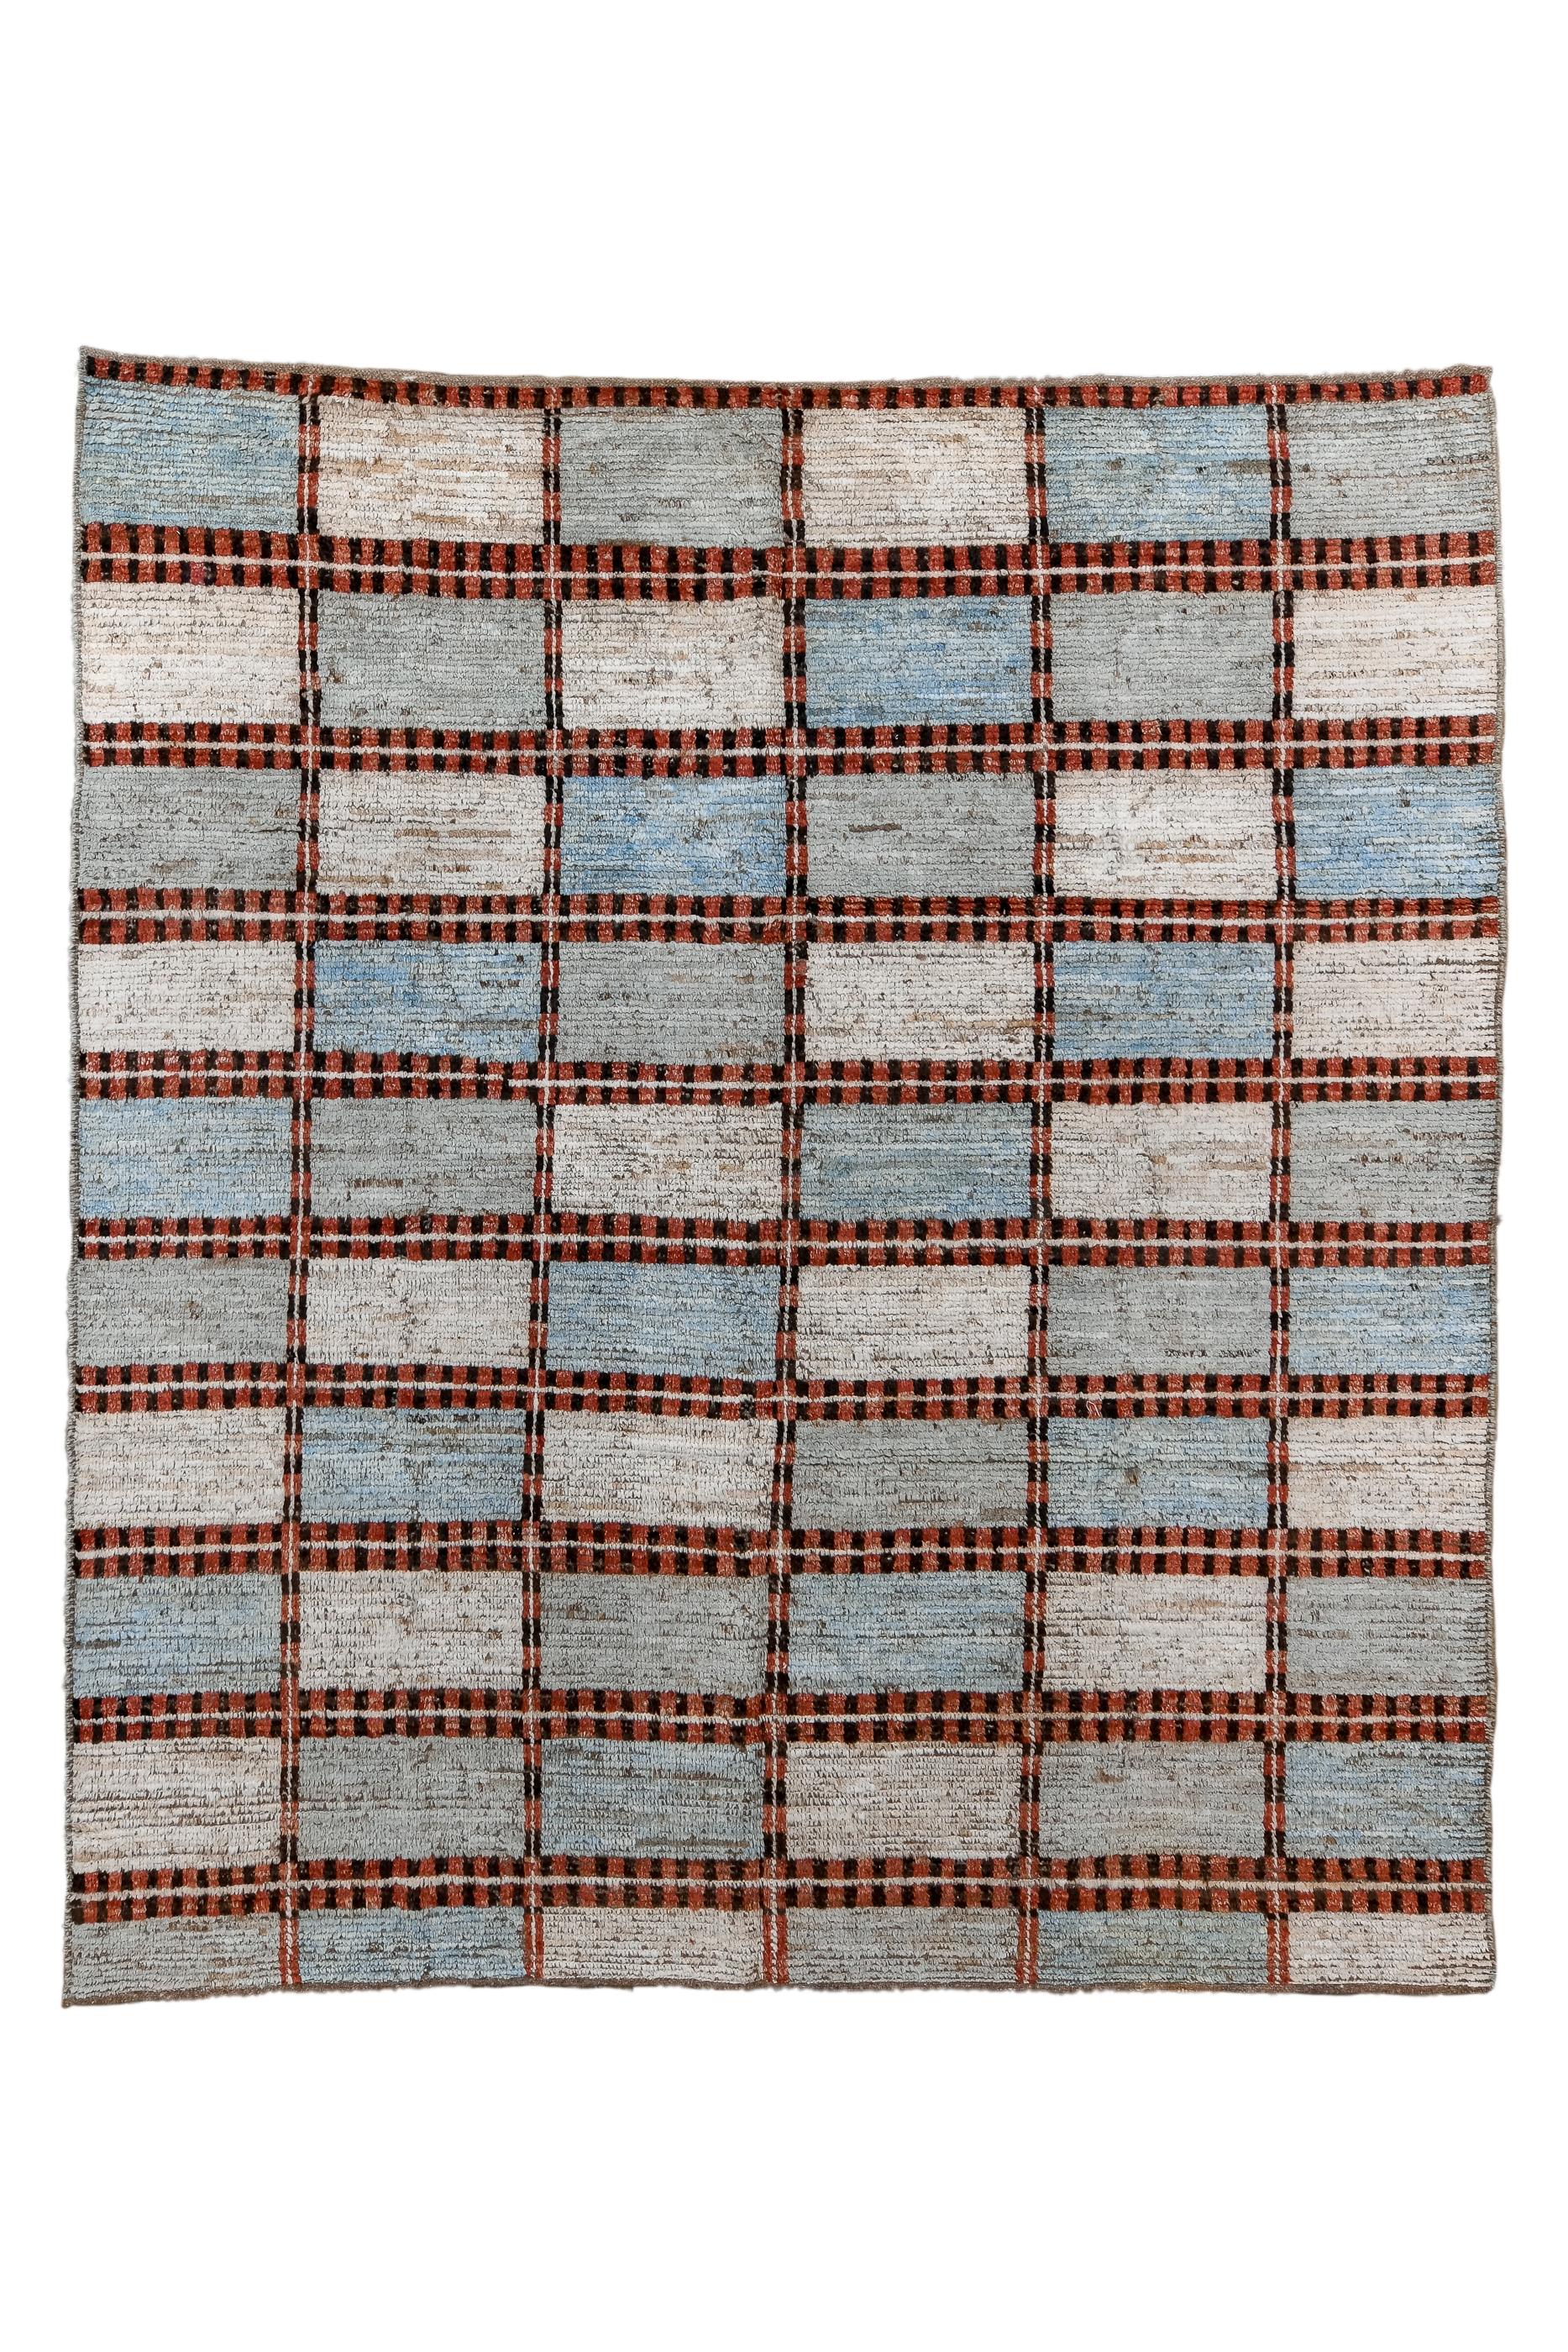 Dieser innovative, grob gewebte Langflorteppich zeigt ein sechs mal zehn großes Raster aus Rechtecken in abgewetzten Pastelltönen in Blau und Beige. Ein doppelter Balkenrahmen hält alles an seinem Platz.  Keine wirklichen End- oder Seitengrenzen.